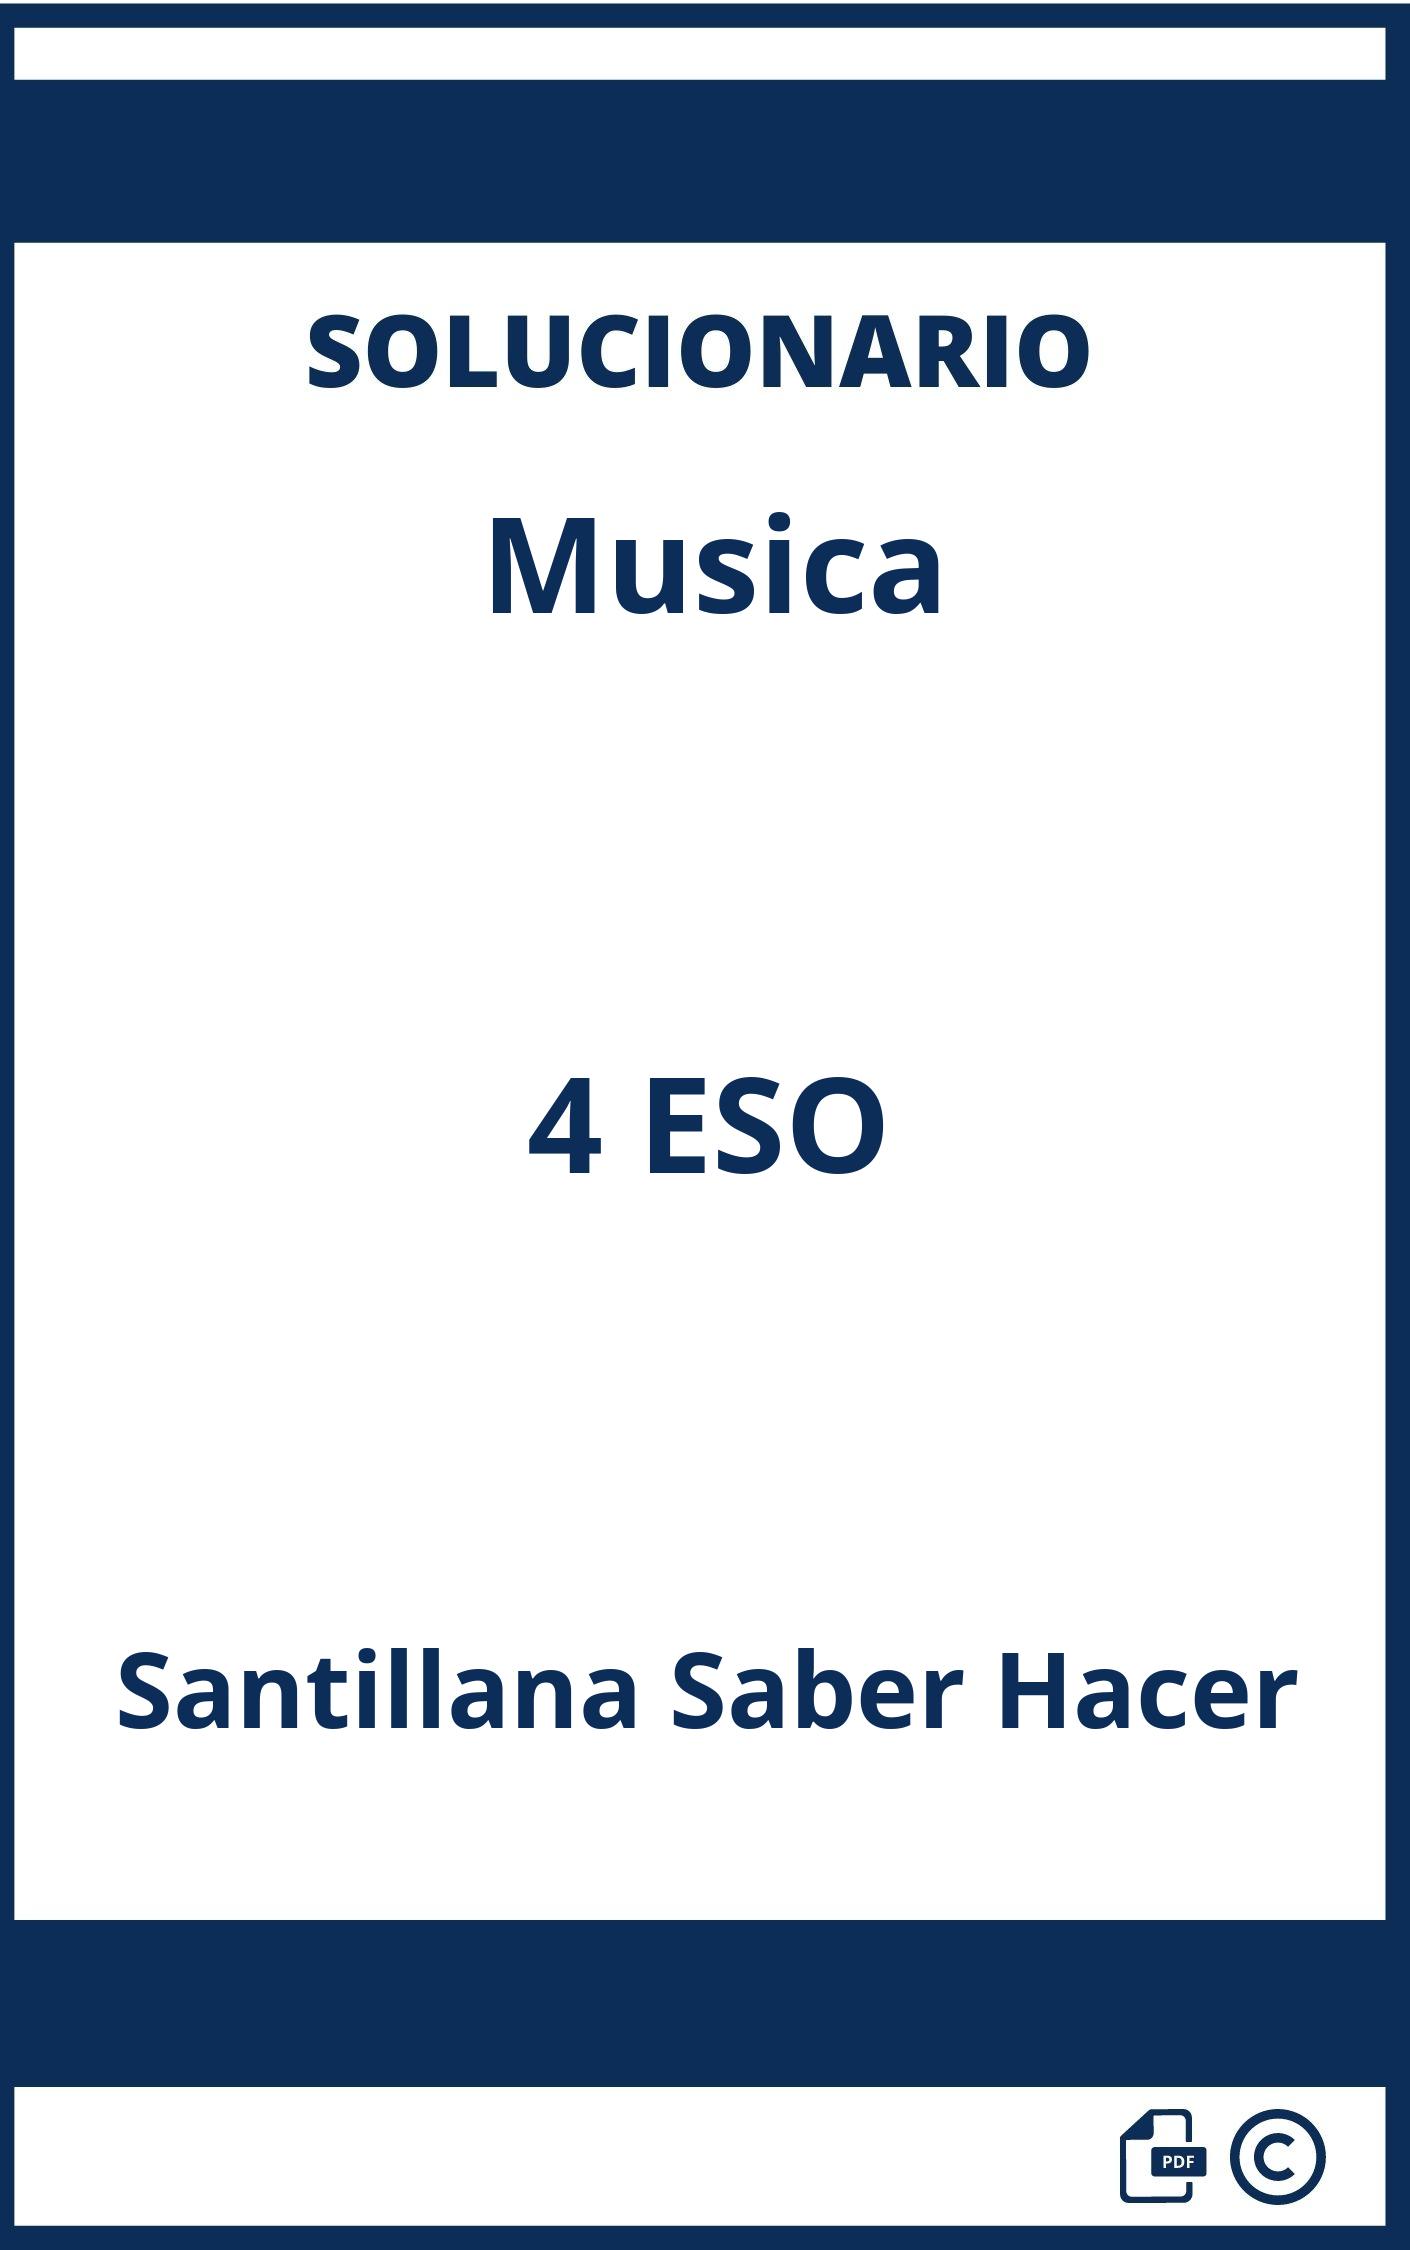 Solucionario Musica 4 ESO Santillana Saber Hacer